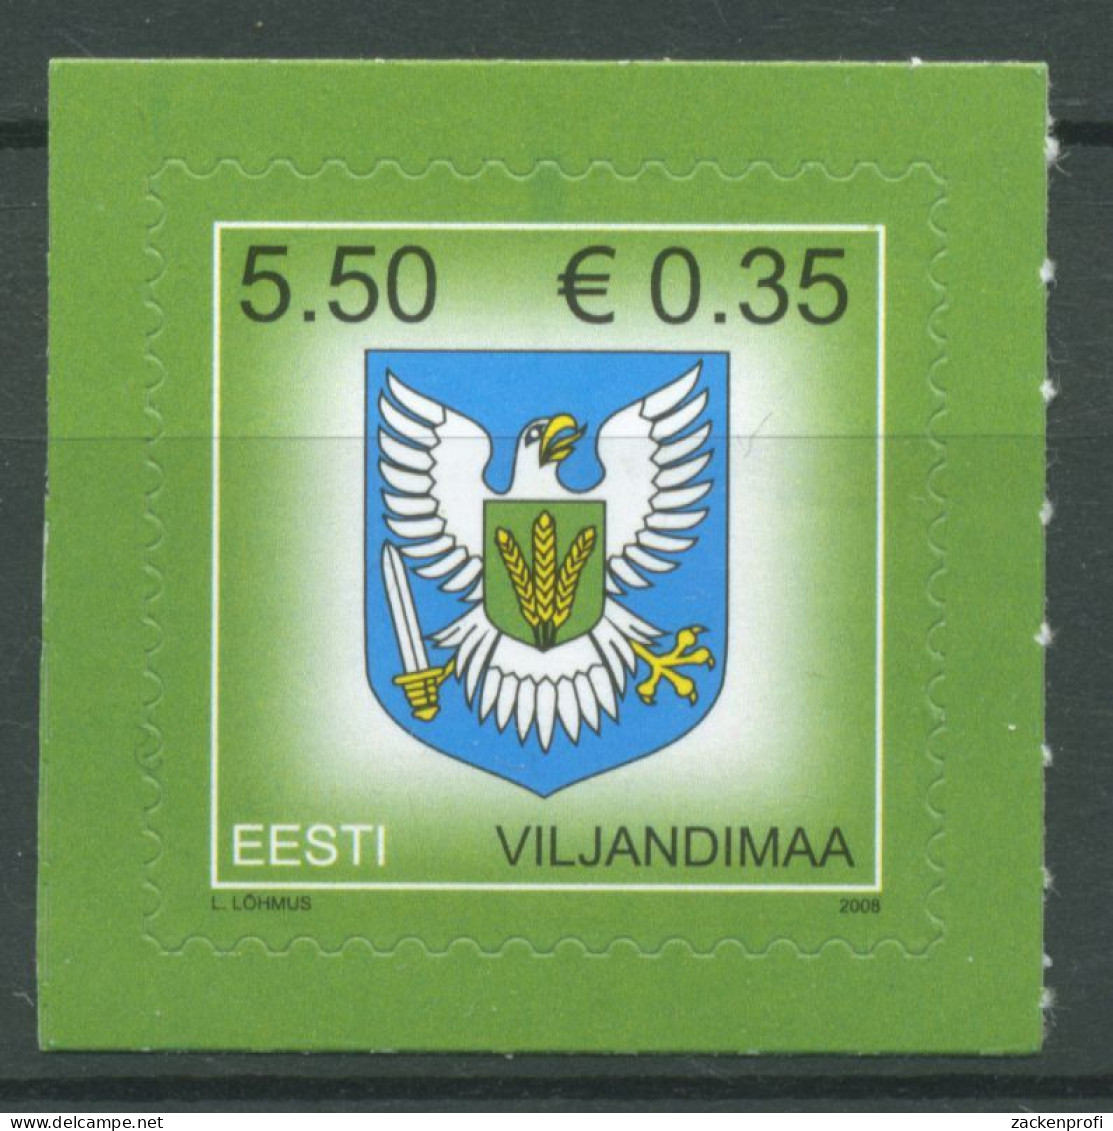 Estland 2008 Freimarke Wappen 612 Postfrisch - Estland